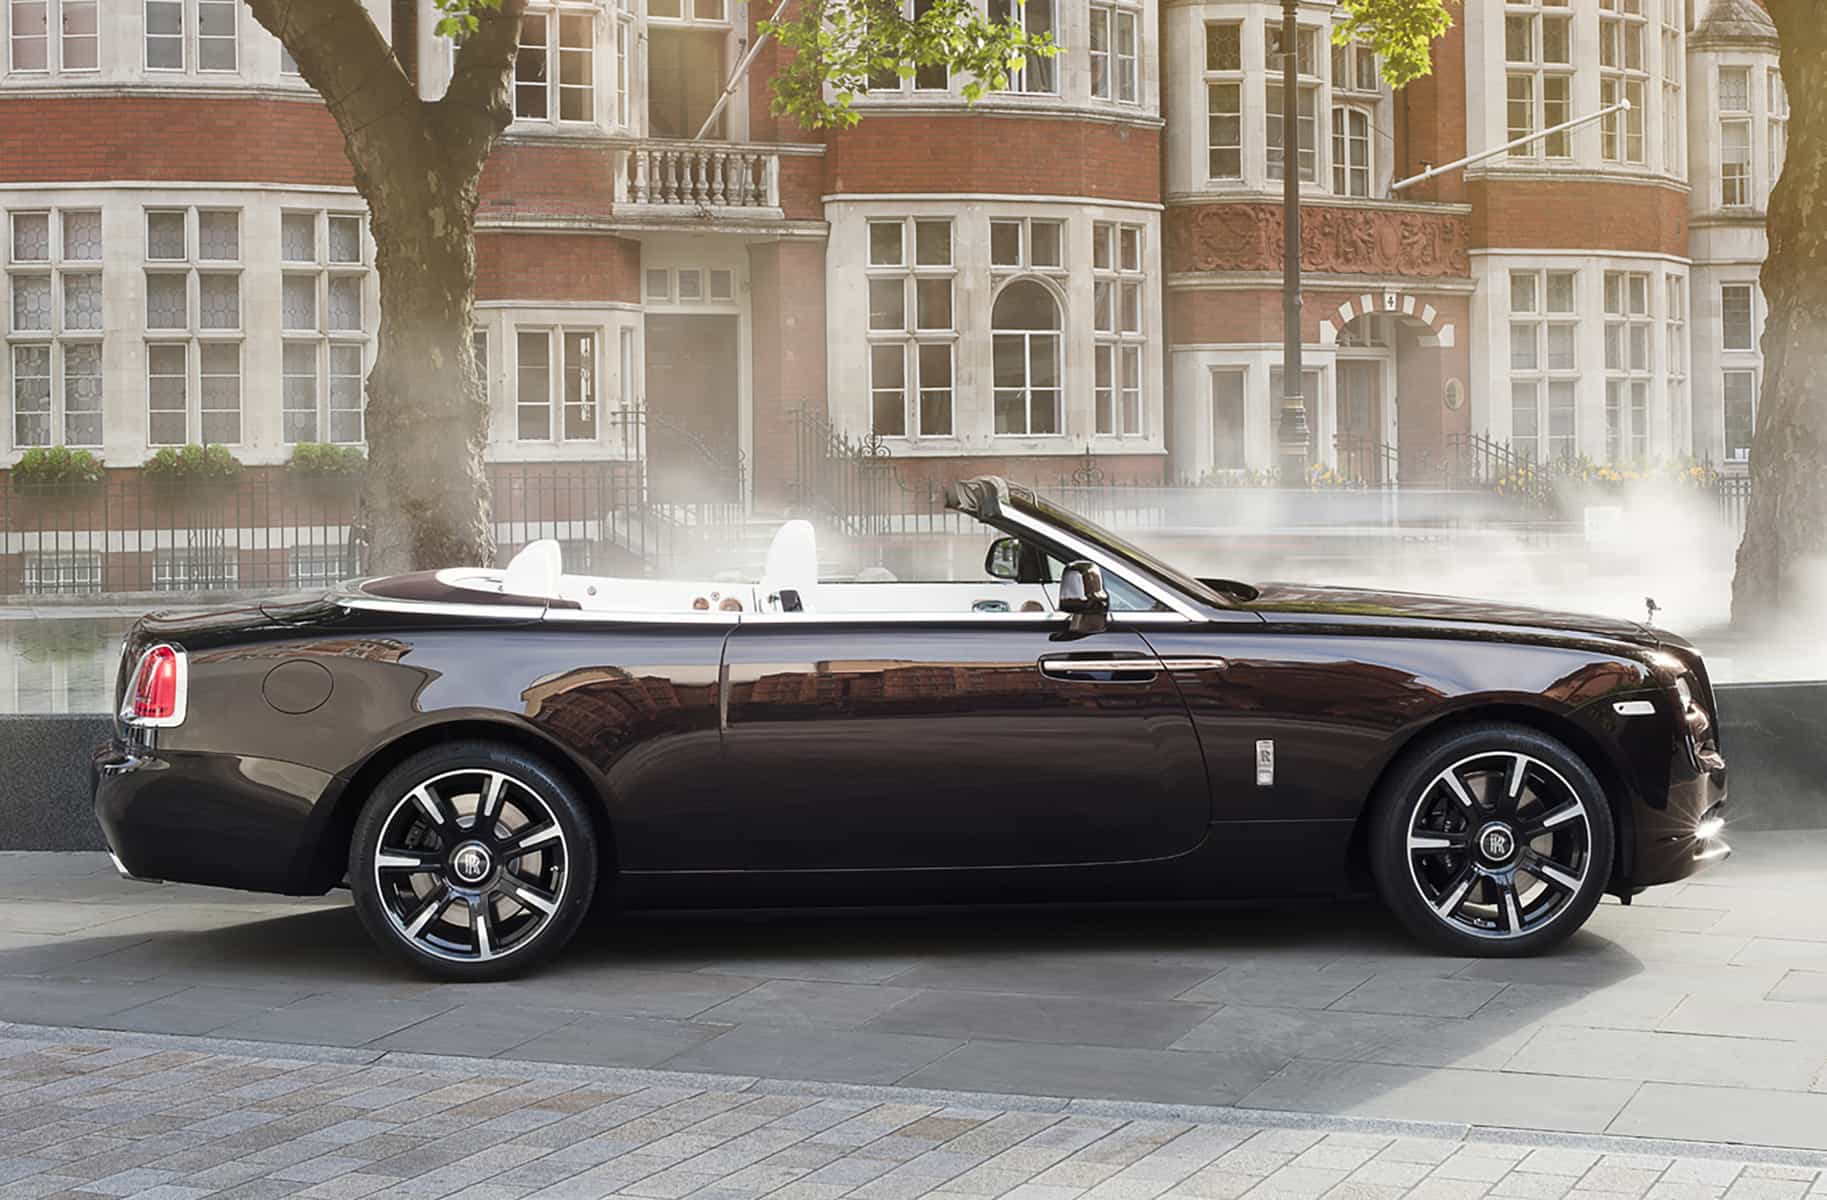 Rolls-Royce-Dawn-Mayfair-Edition-3